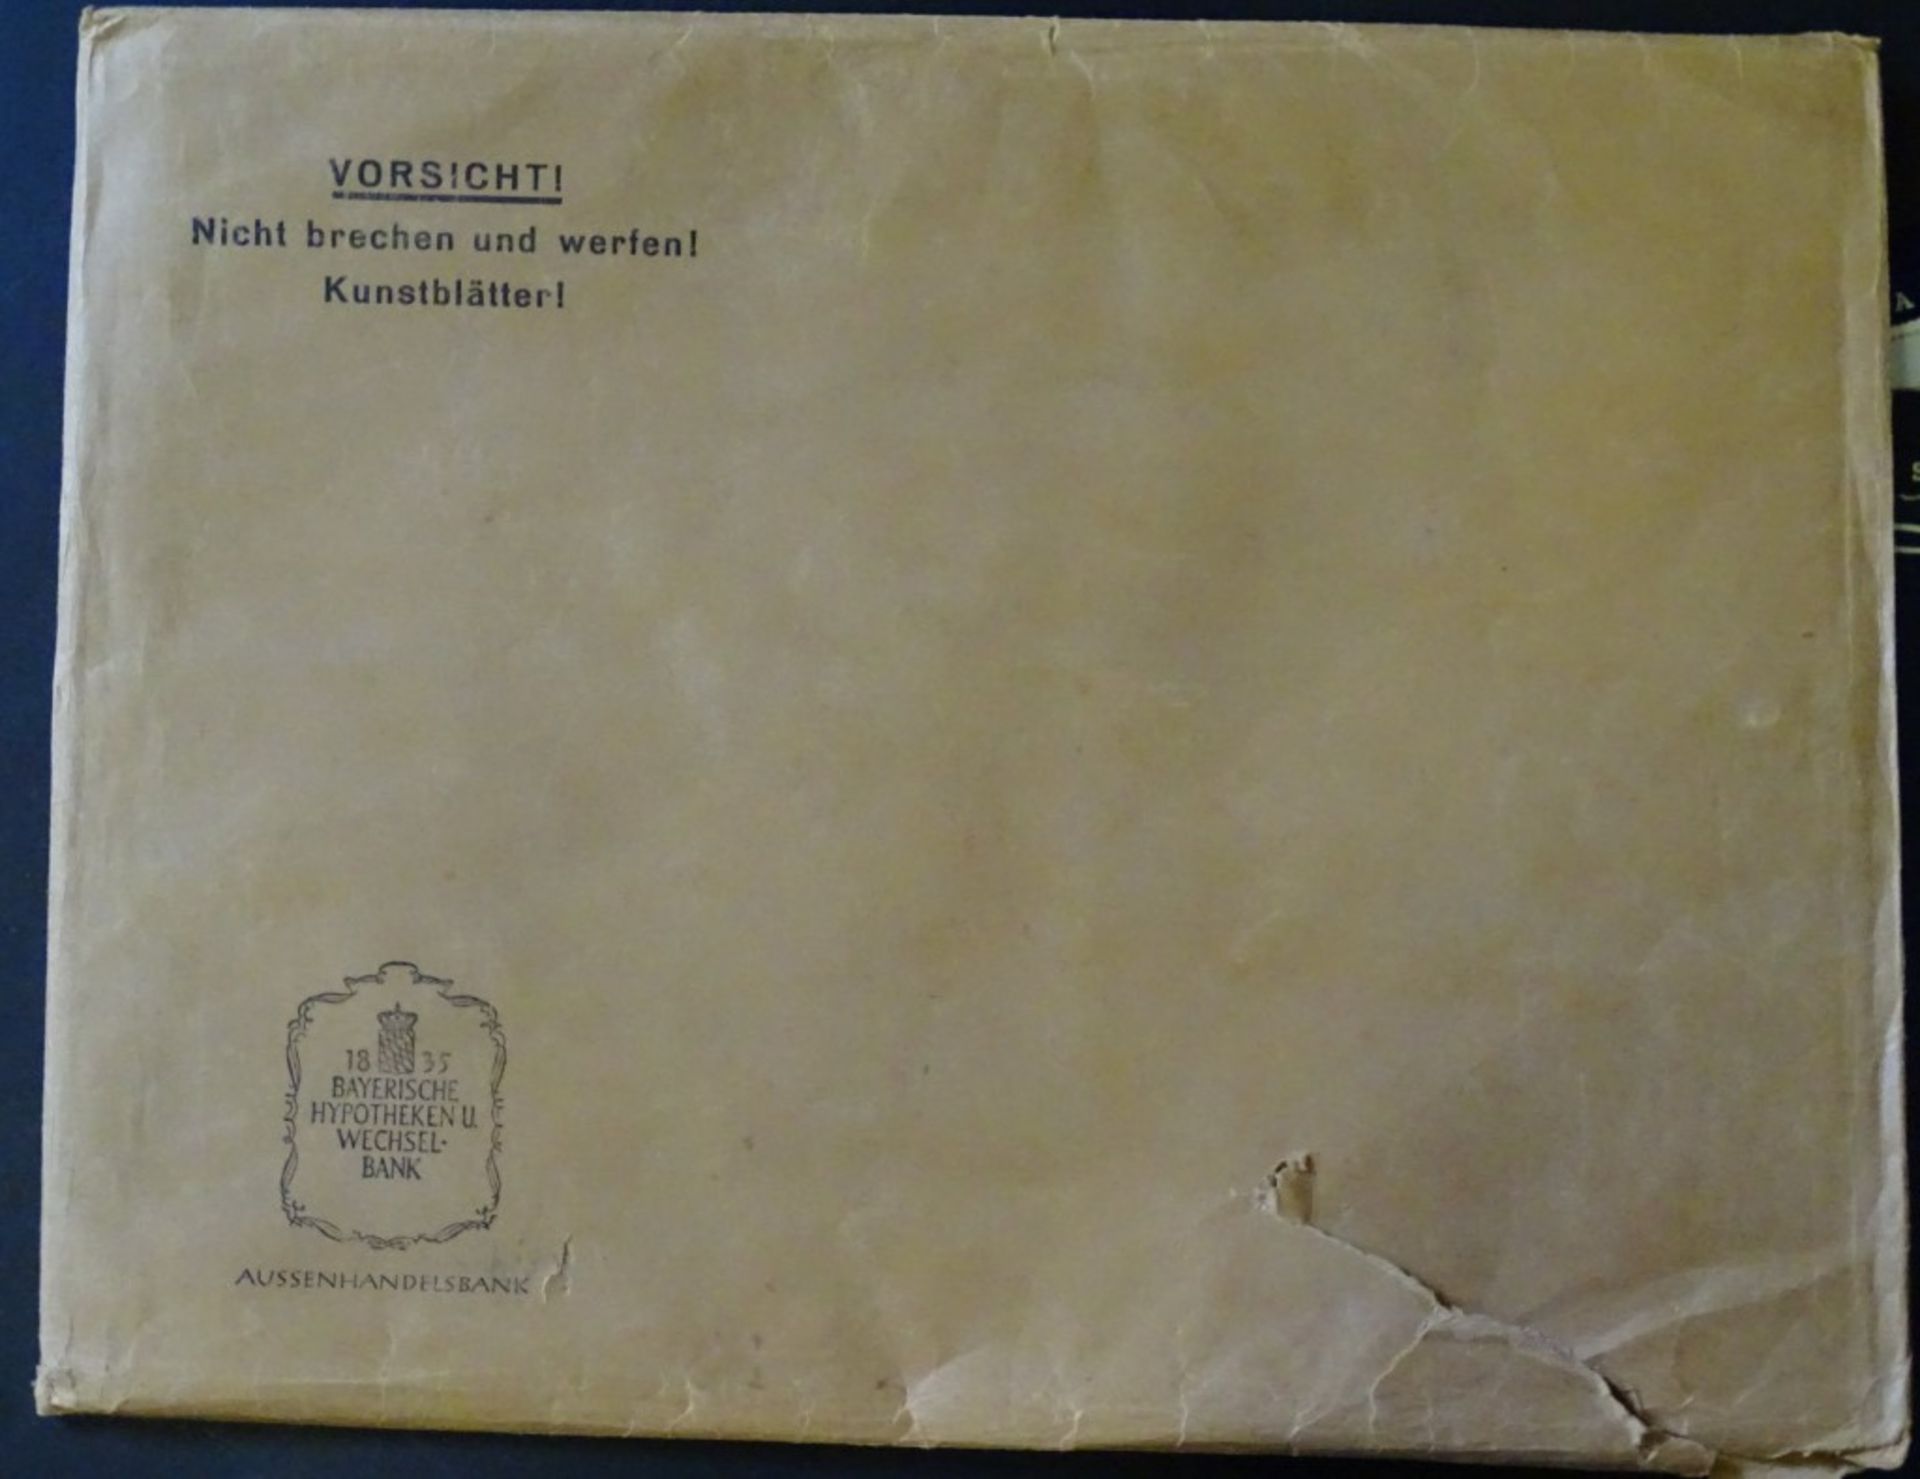 Zwei Kalender 1951 + 1953 der Bayerische Hypotheken u.Wechsel Bank"""" - Image 5 of 6